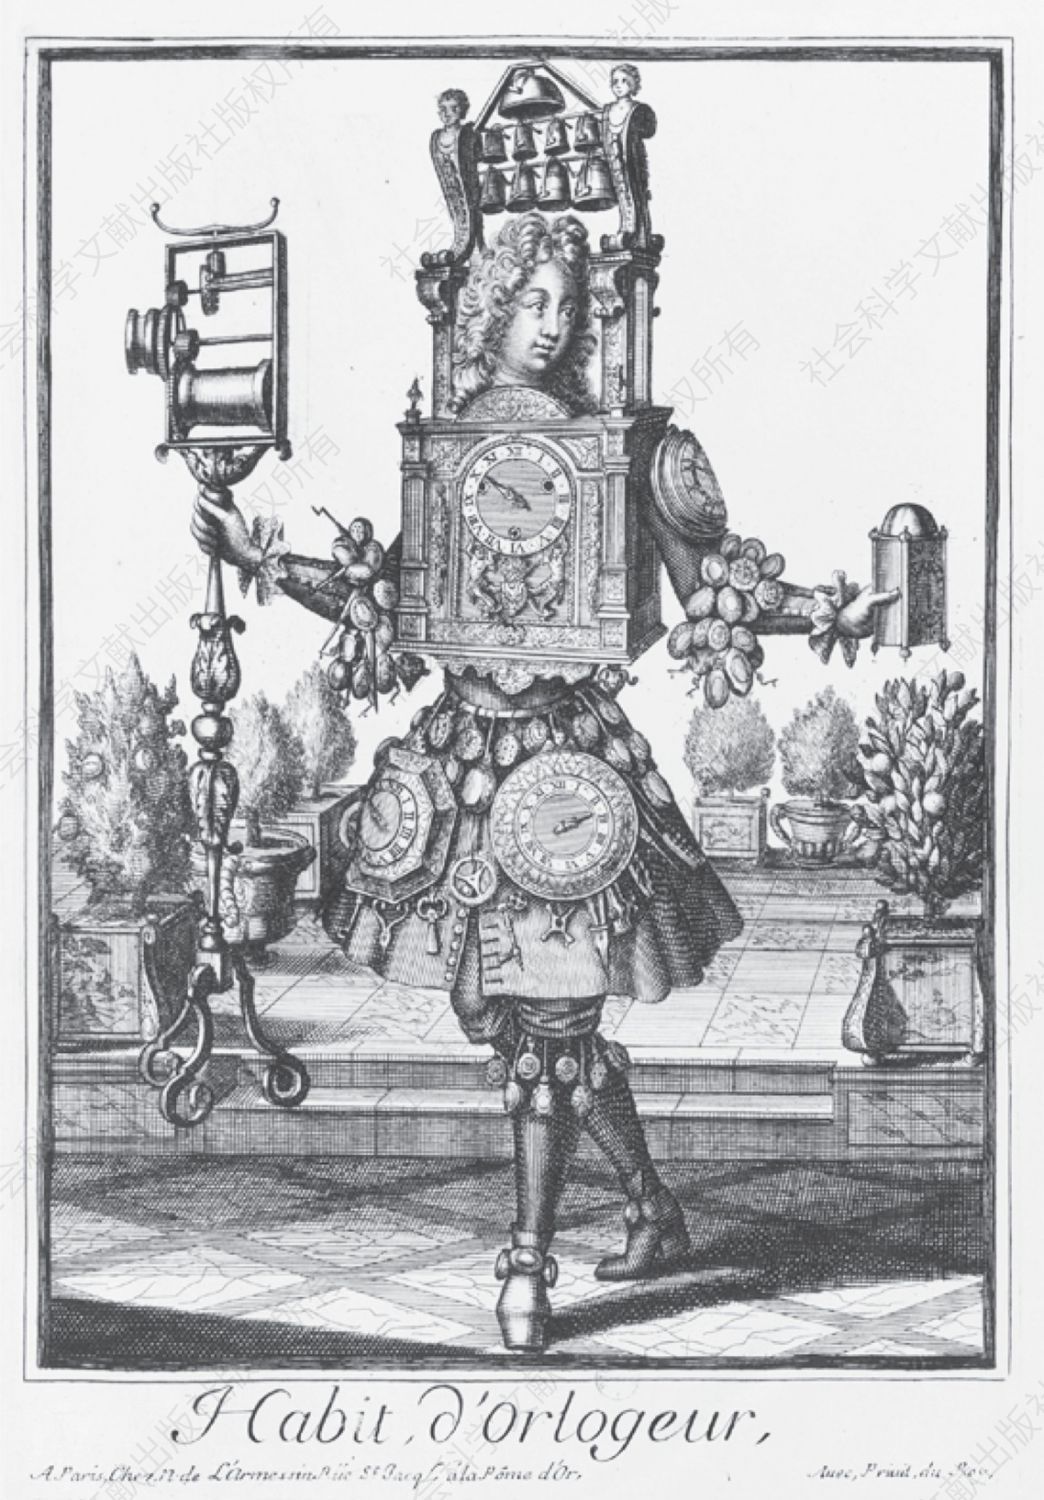 巴洛克时期的钟表——想象中钟表匠的装扮，带有其职业元素。图为尼古拉二世·德·拉梅辛（Nicolas II de Larmessin）所作铜版画，取自《滑稽装束·职业服装》（Les Costumes Grotesques，Habits des métiers et professions，巴黎，1695）。